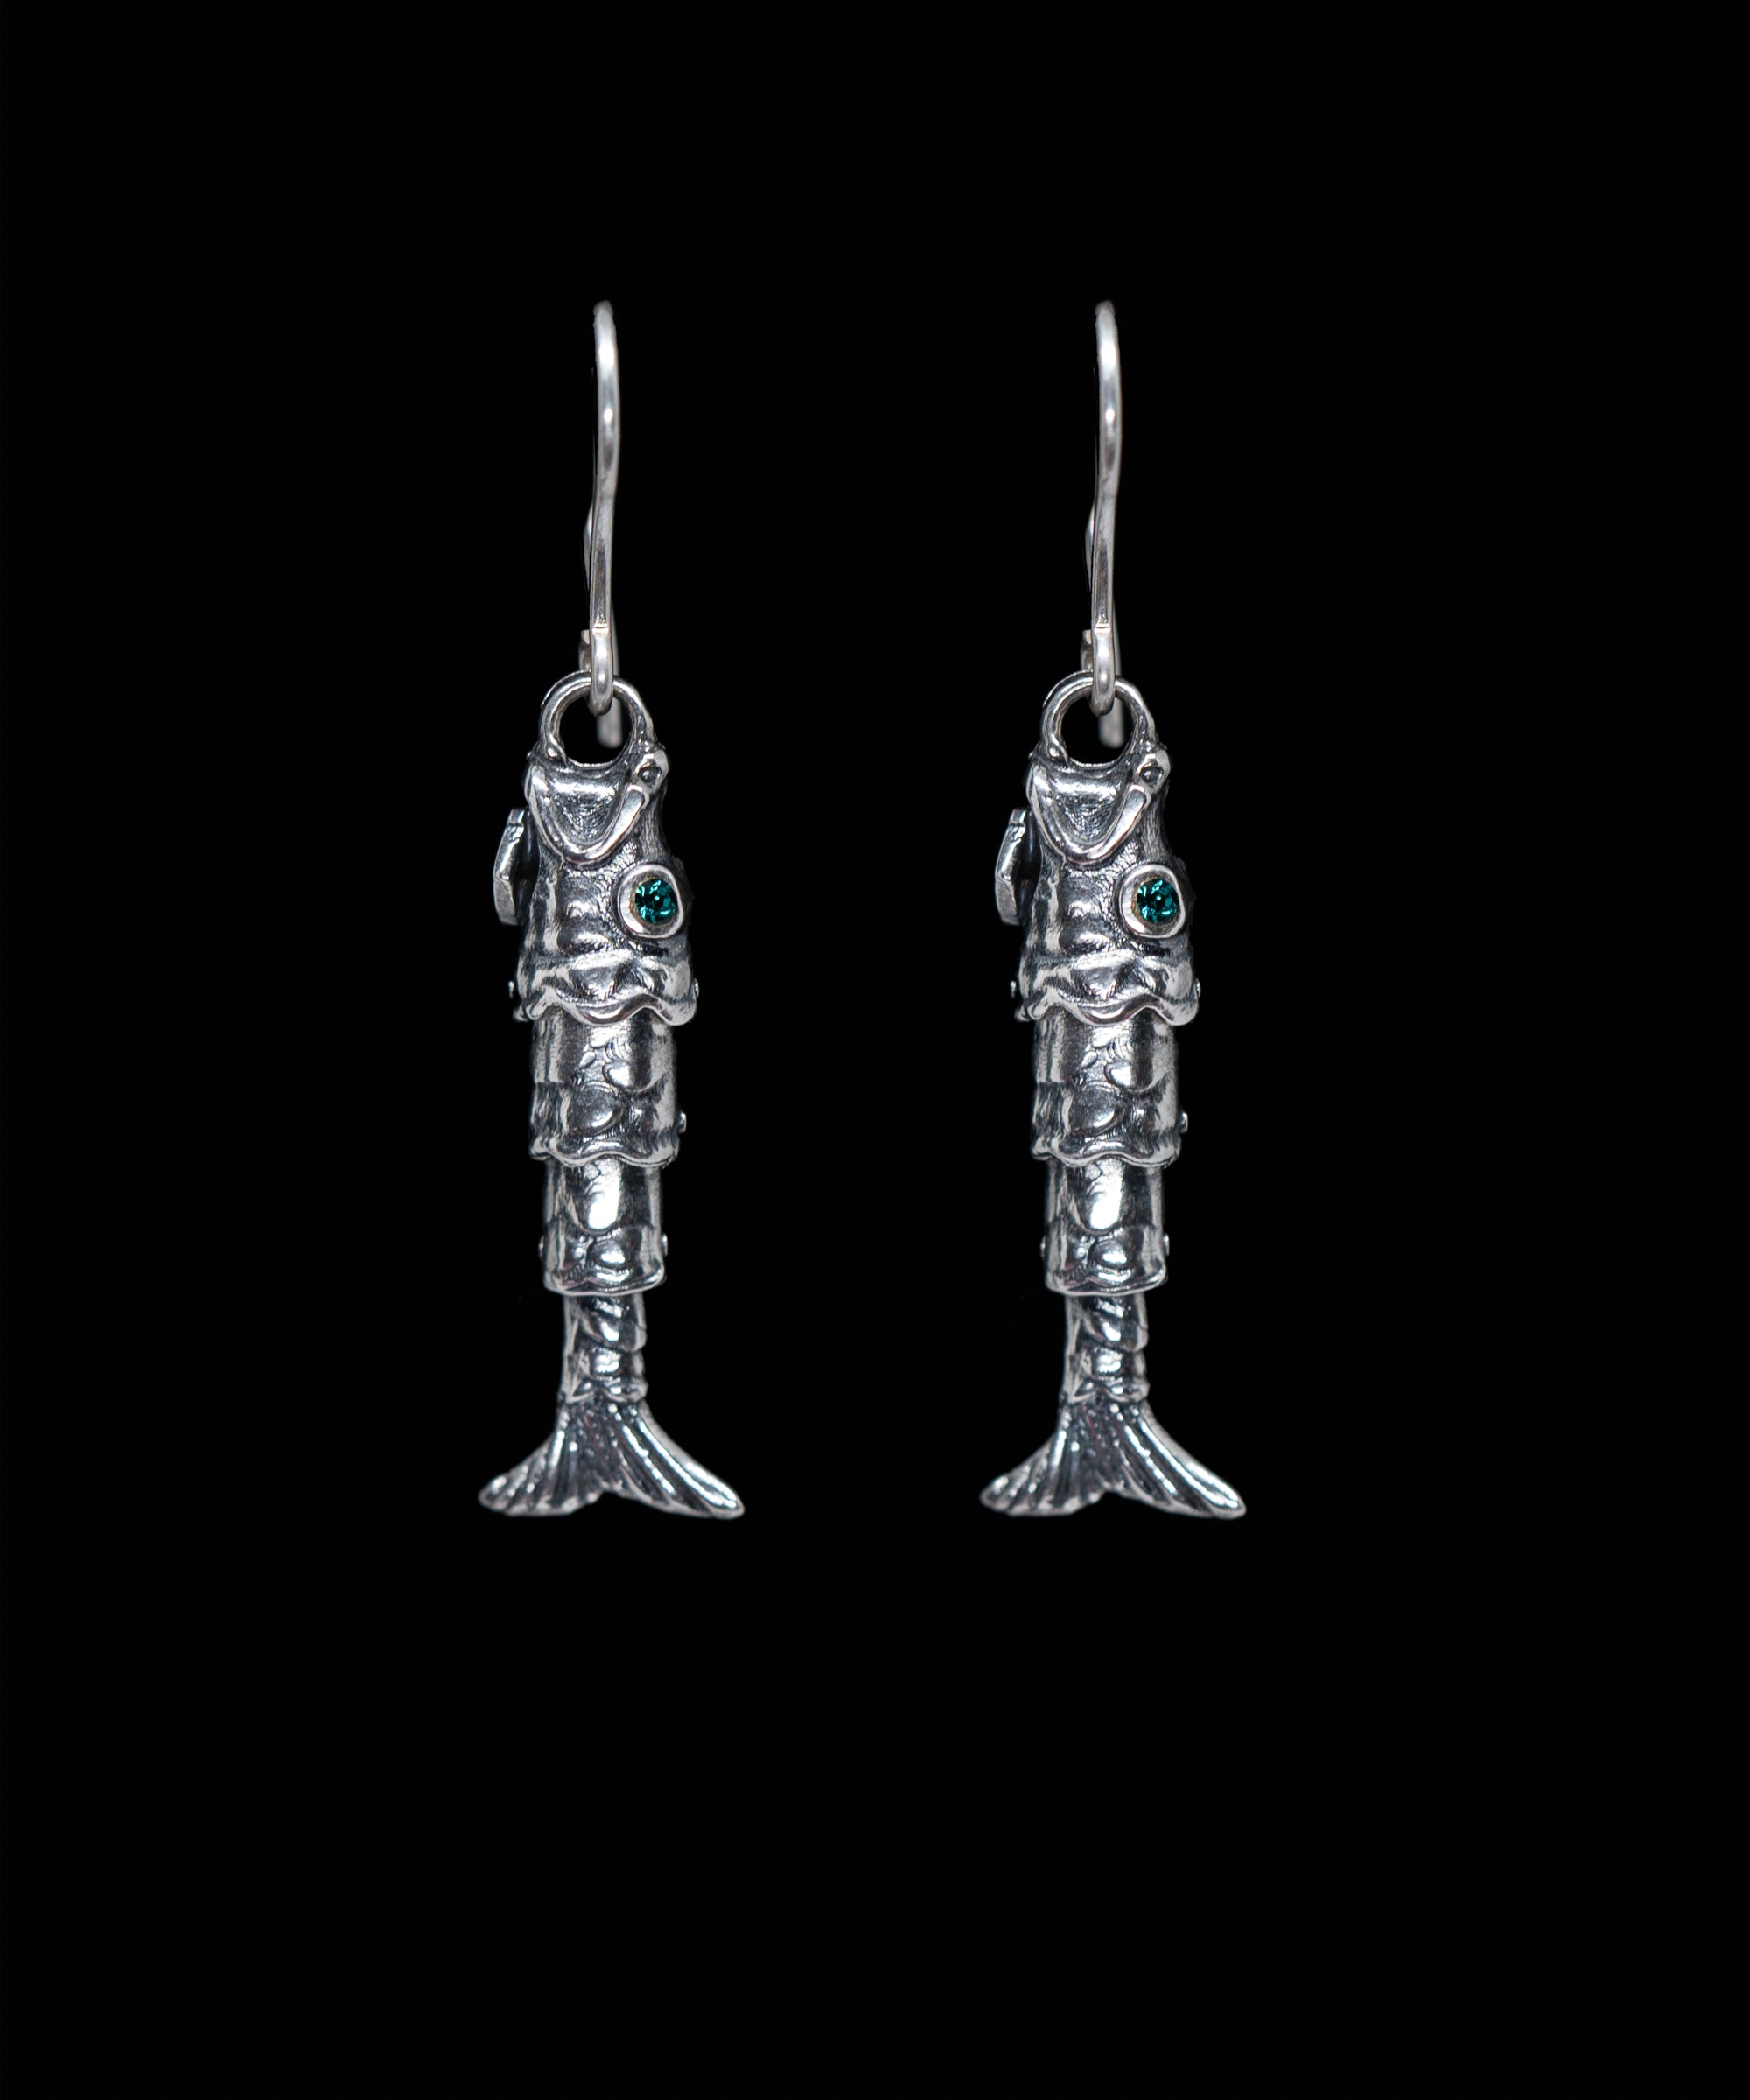 Posidonio Earrings